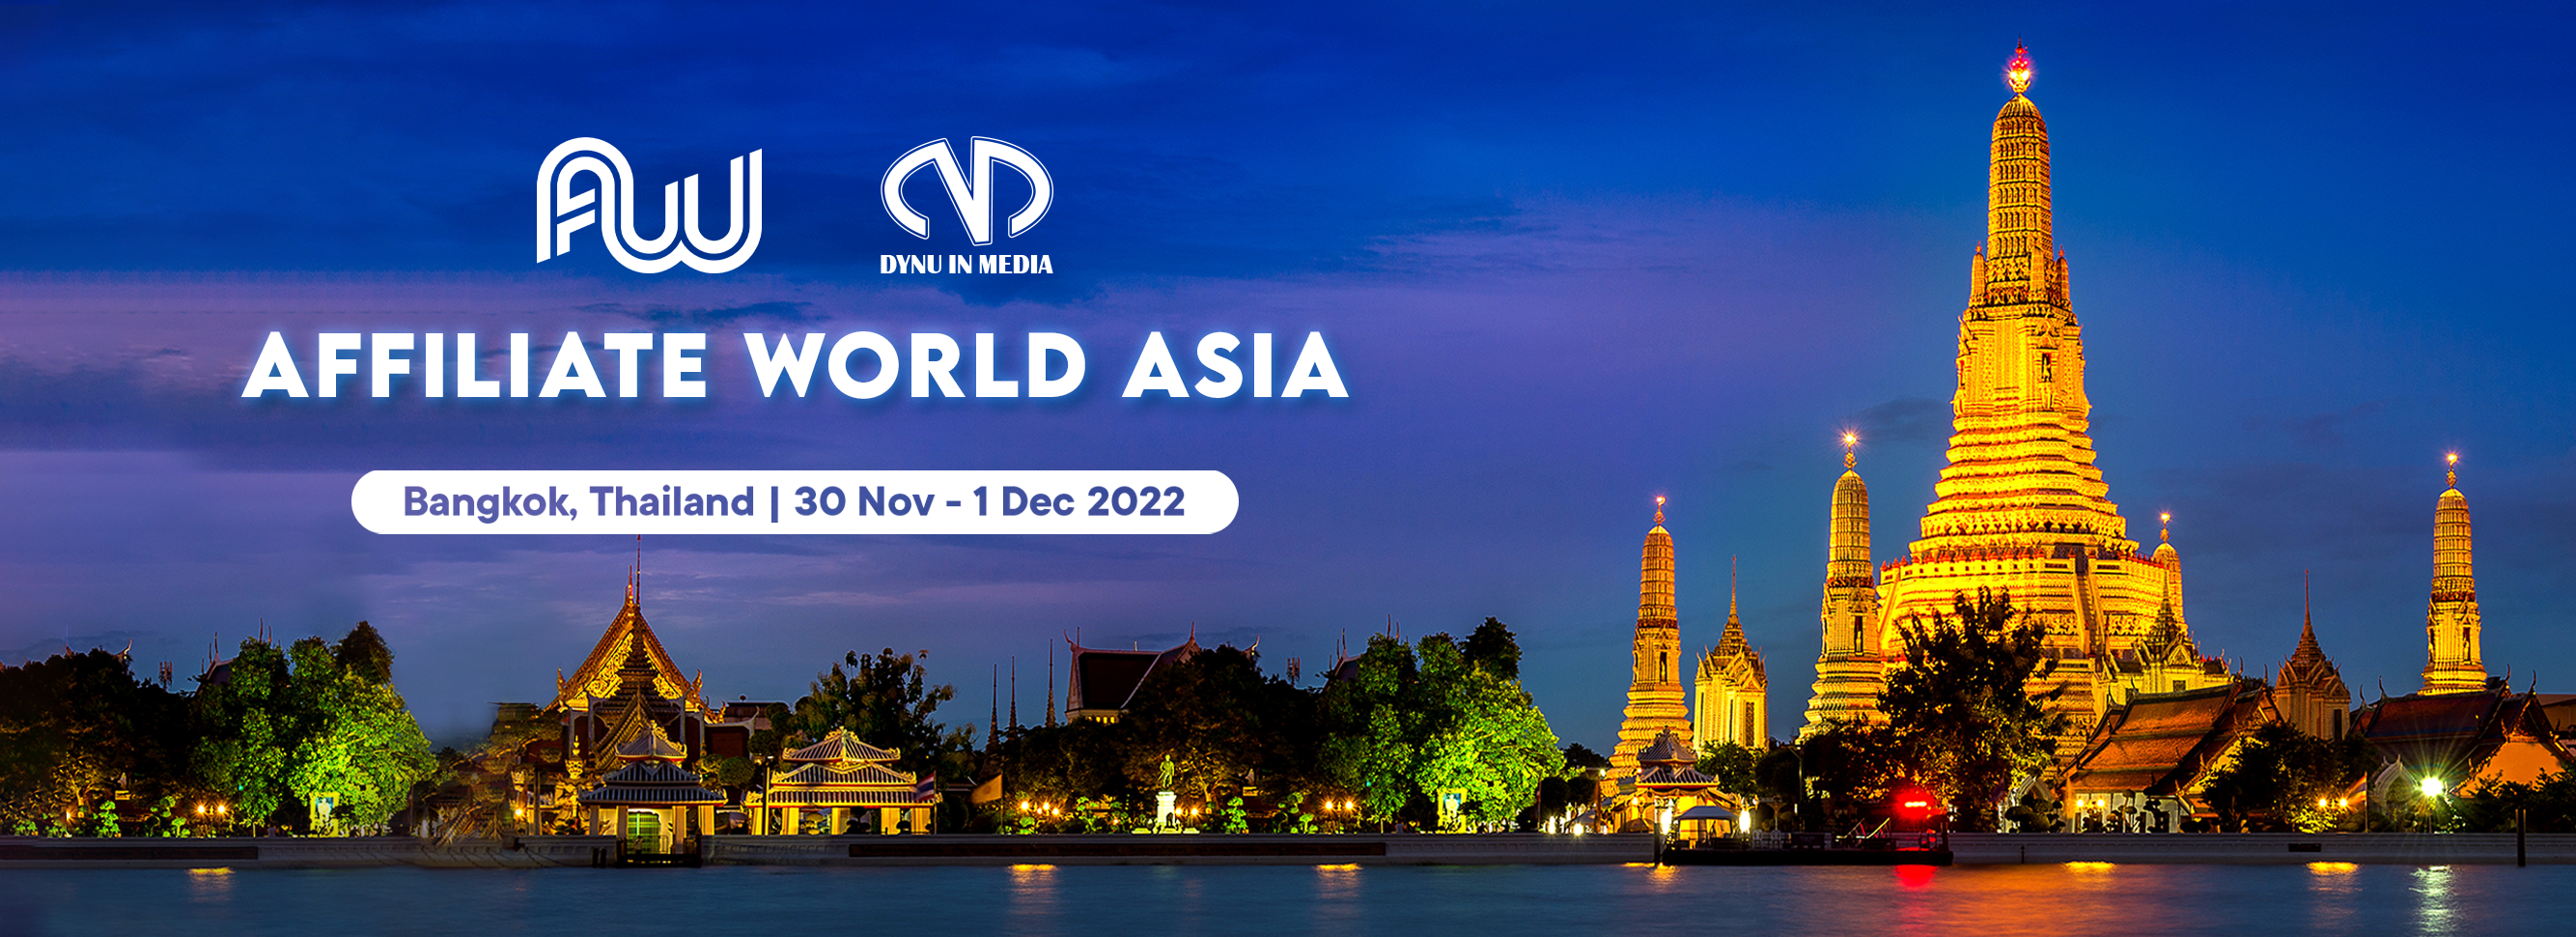 Affiliate World Asia 2022 | Dynu In Media